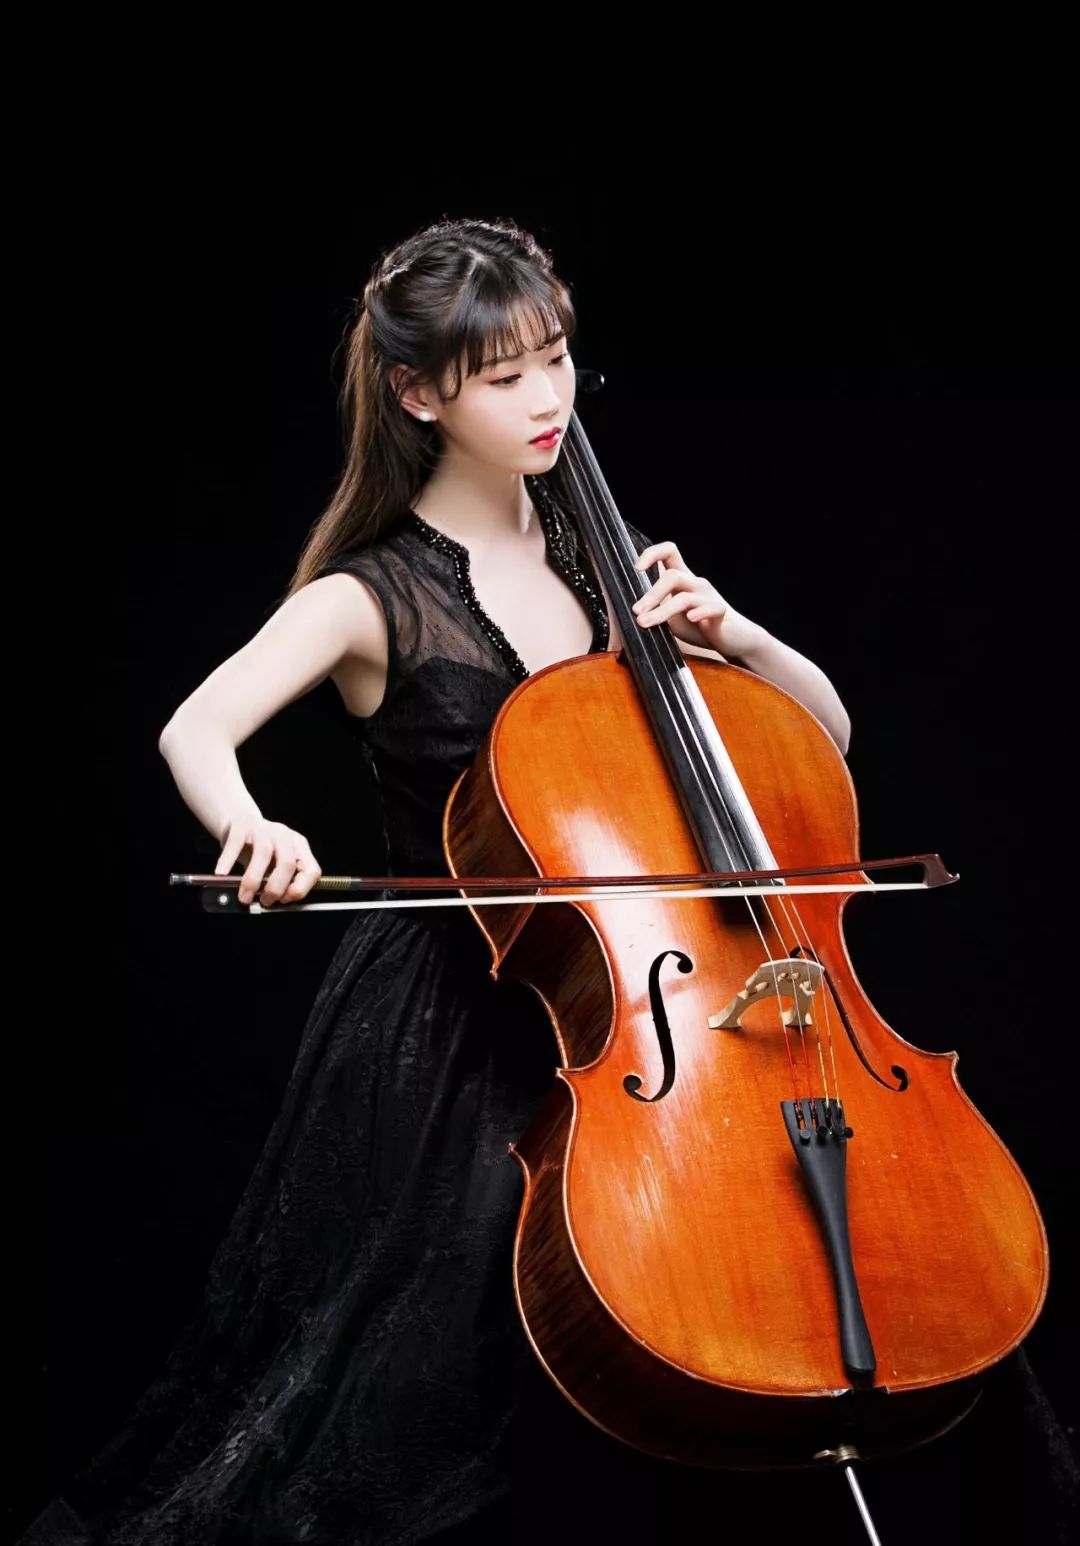 艺术导赏大提琴名曲品鉴感受音乐贵妇的热烈丰富